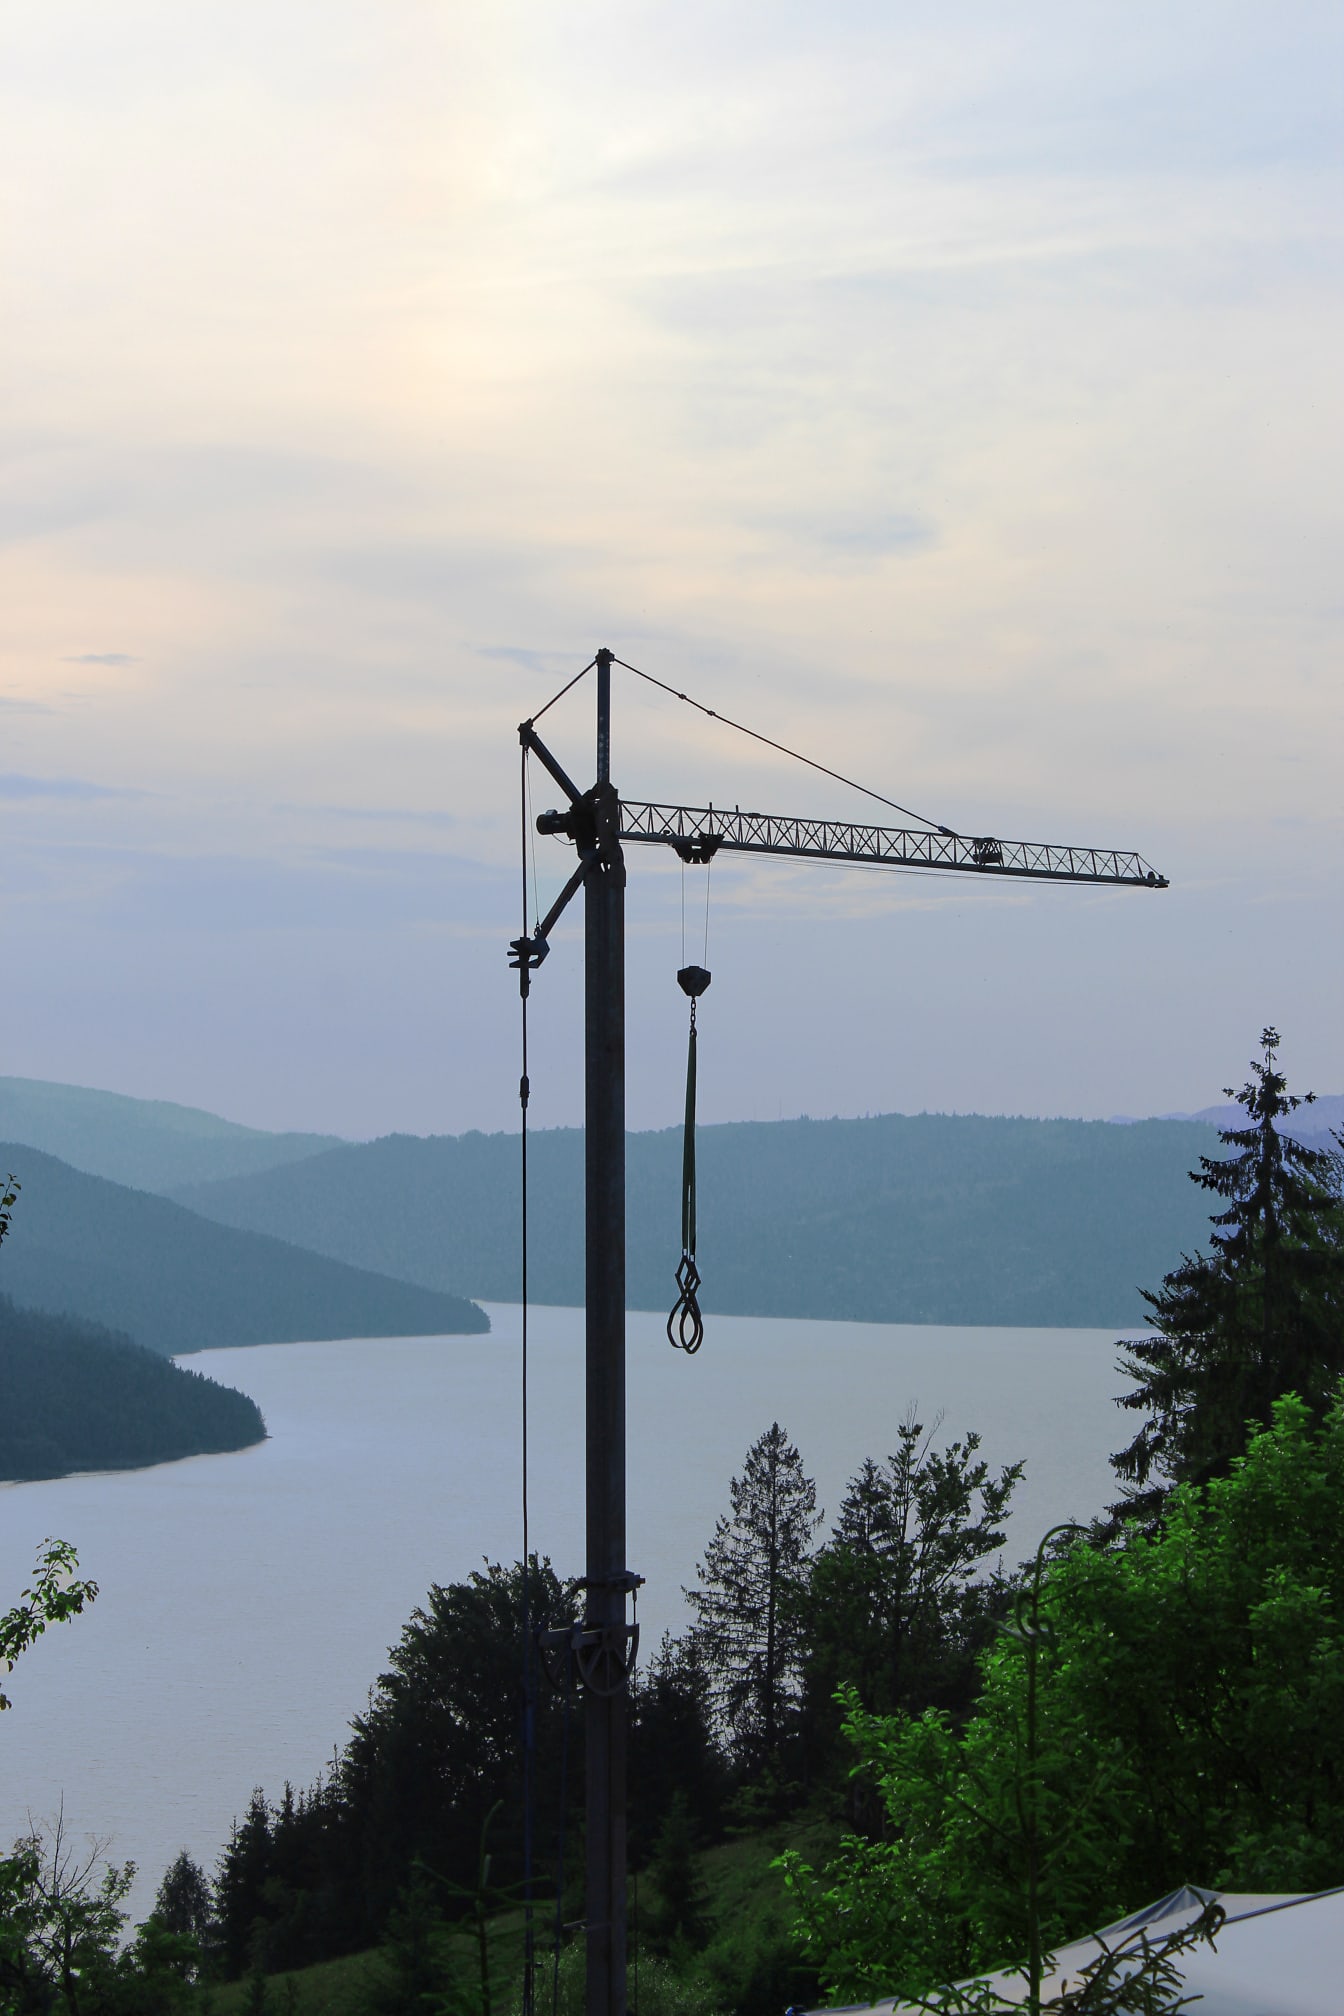 Wysoki żuraw przemysłowy w górach nad jeziorem